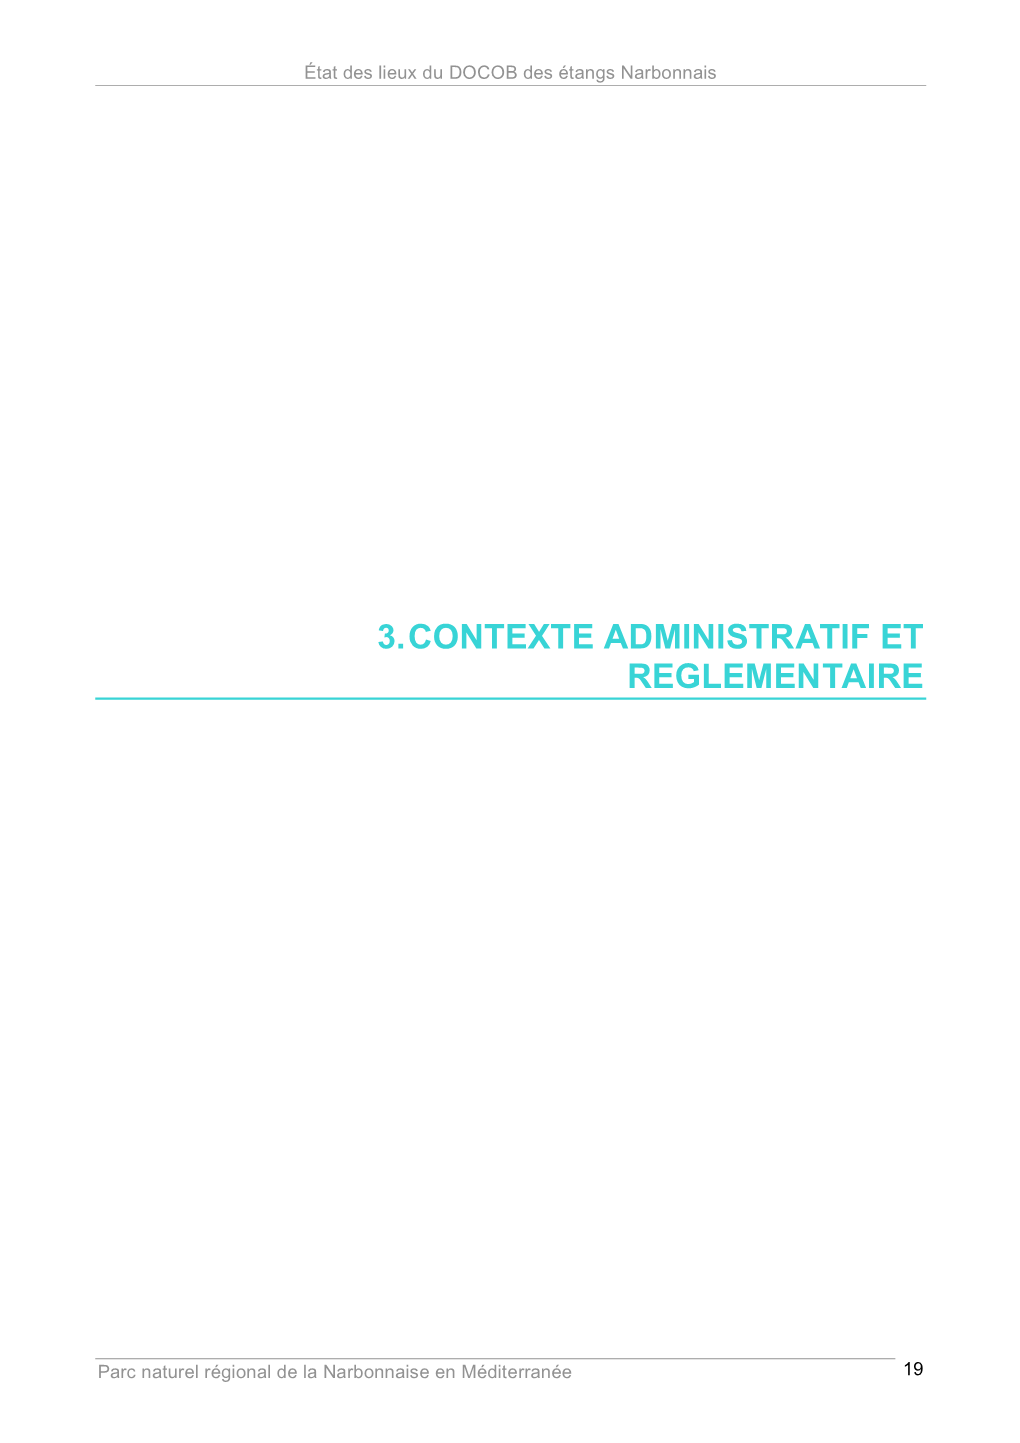 3. Contexte Administratif Et Reglementaire